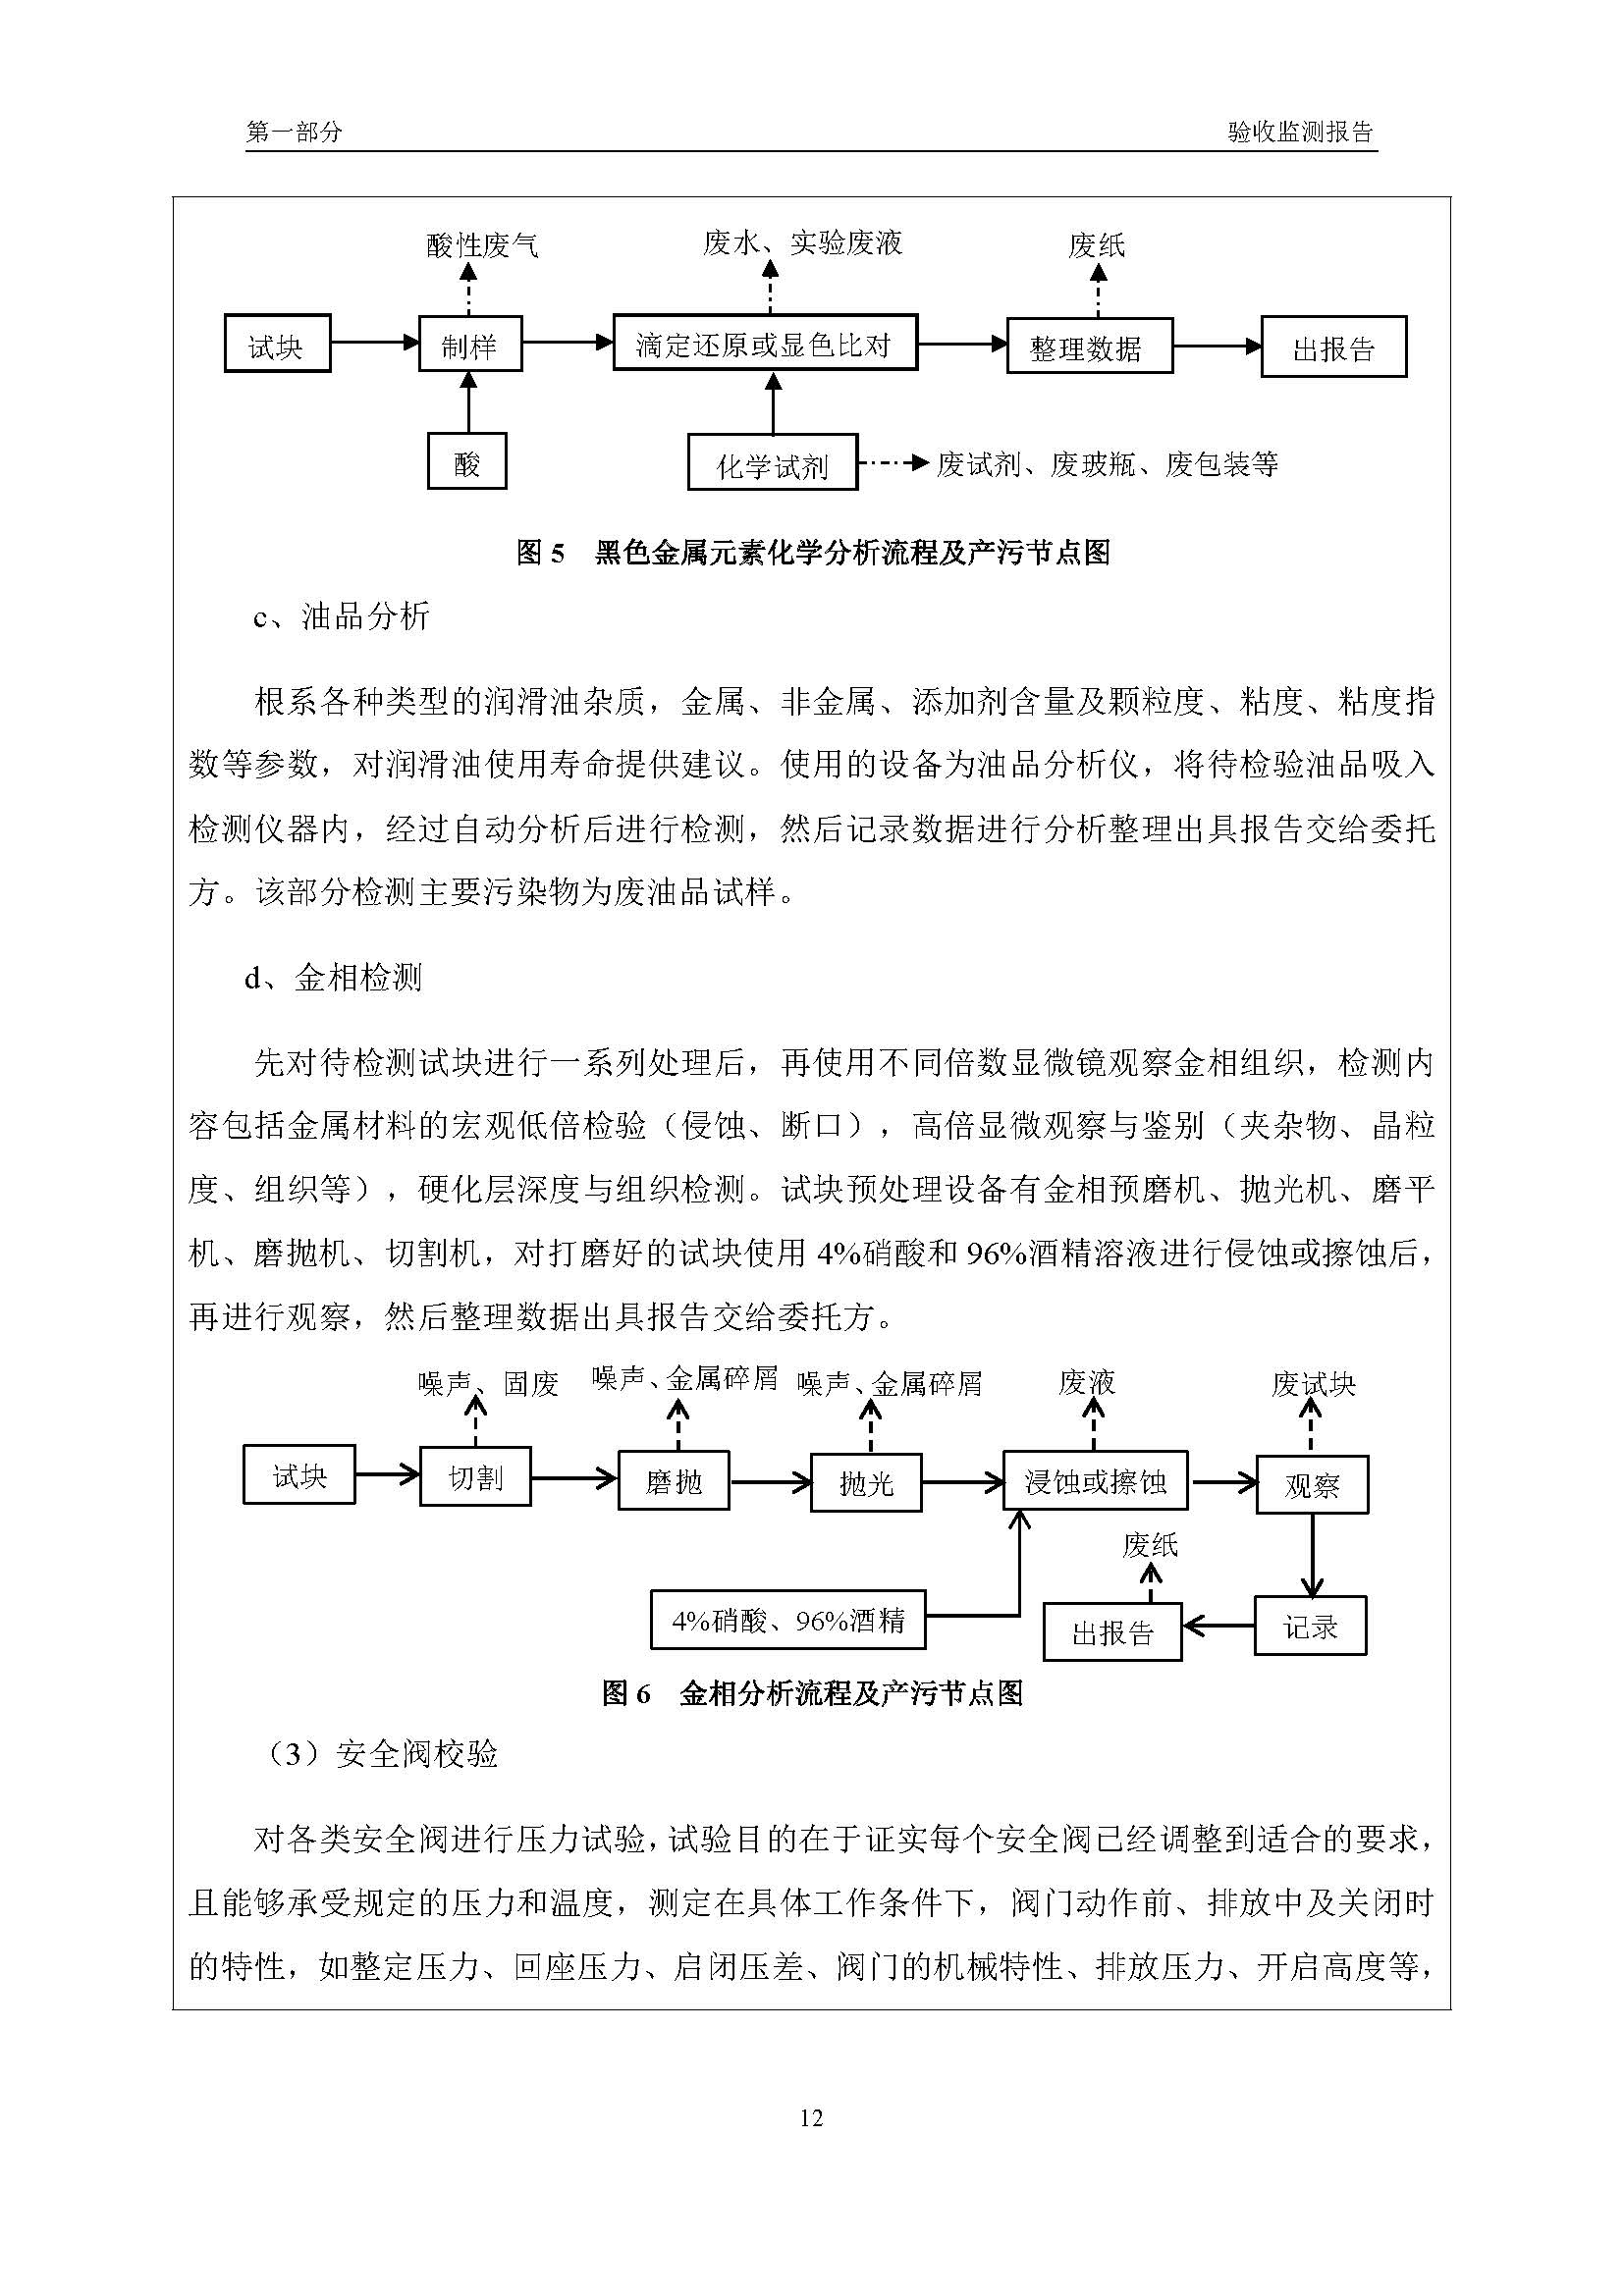 汉正检测环评验收报告 2018.05.31_页面_14.jpg